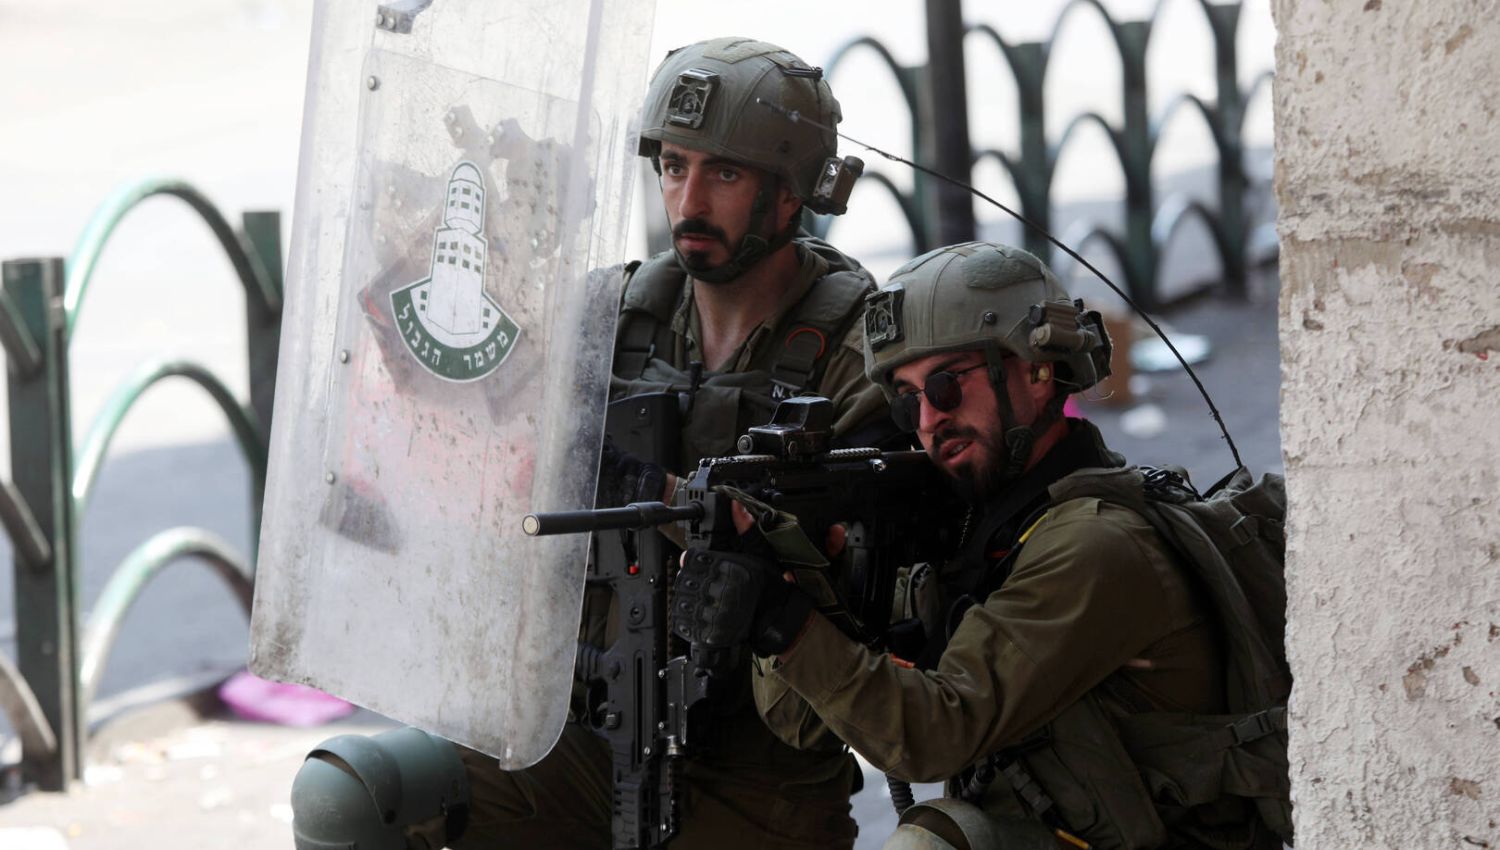 اسرائيل هيوم: لا حل أمني على إسرائيل مواجهة الفلسطينيين بصبر وحكمة 